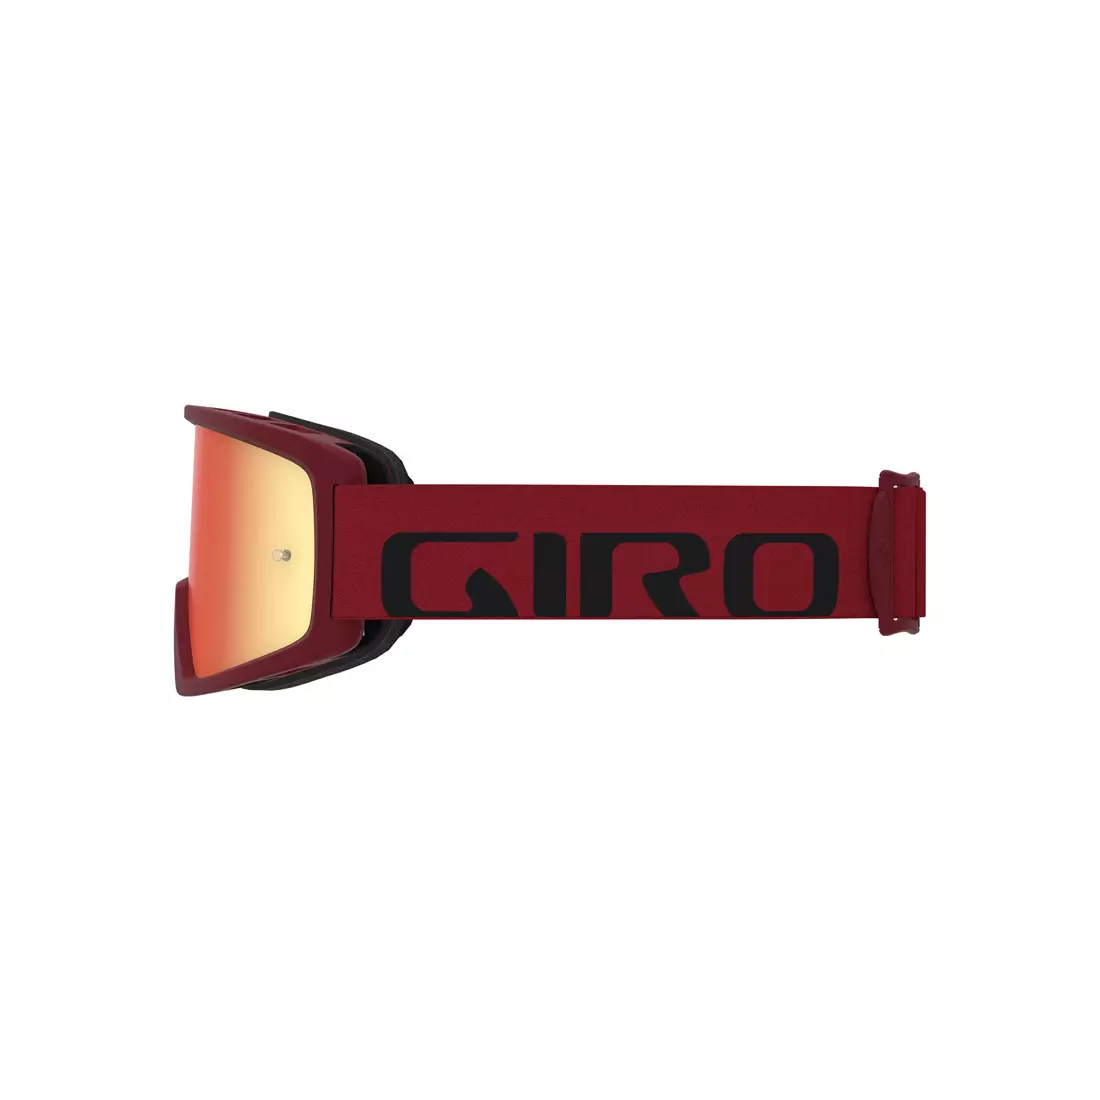 GIRO gogle rowerowe tazz mtb red black (szyba kolorowa AMBER S3 + Szyba Przeźroczysta S0) mocowanie pod zrywki GR-7097841